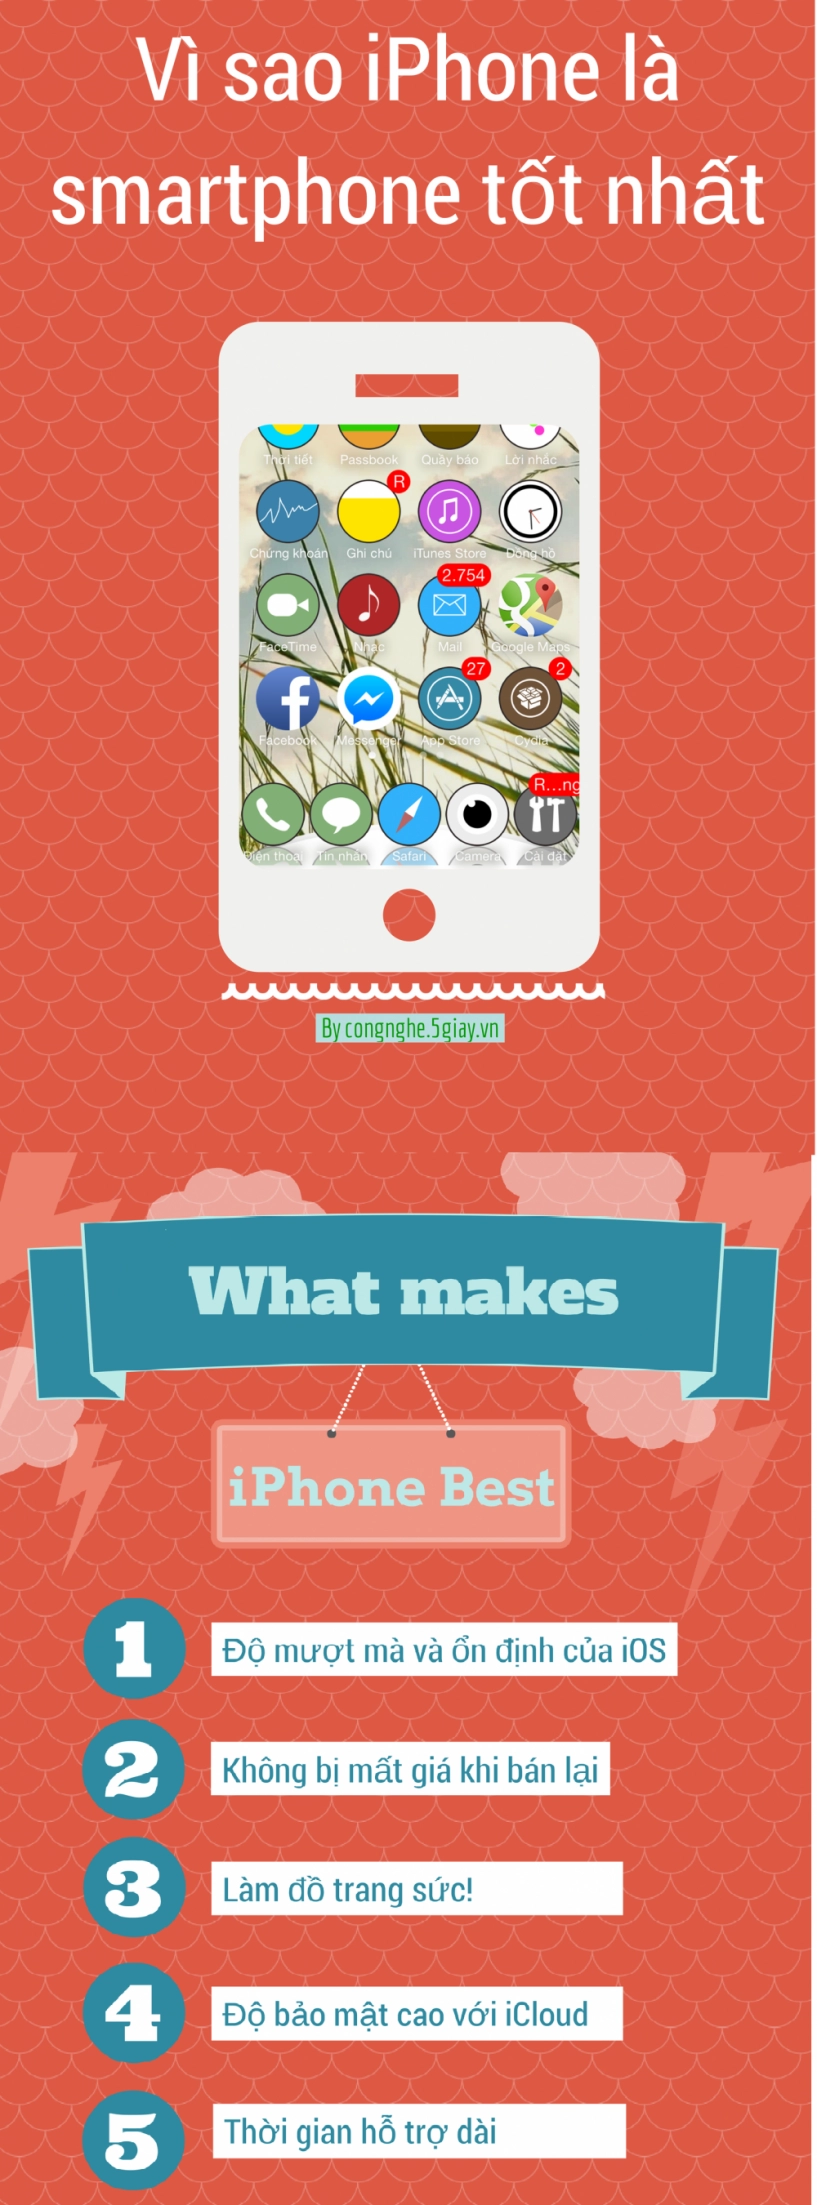 infographic 5 điều làm iphone trở nên tốt nhất